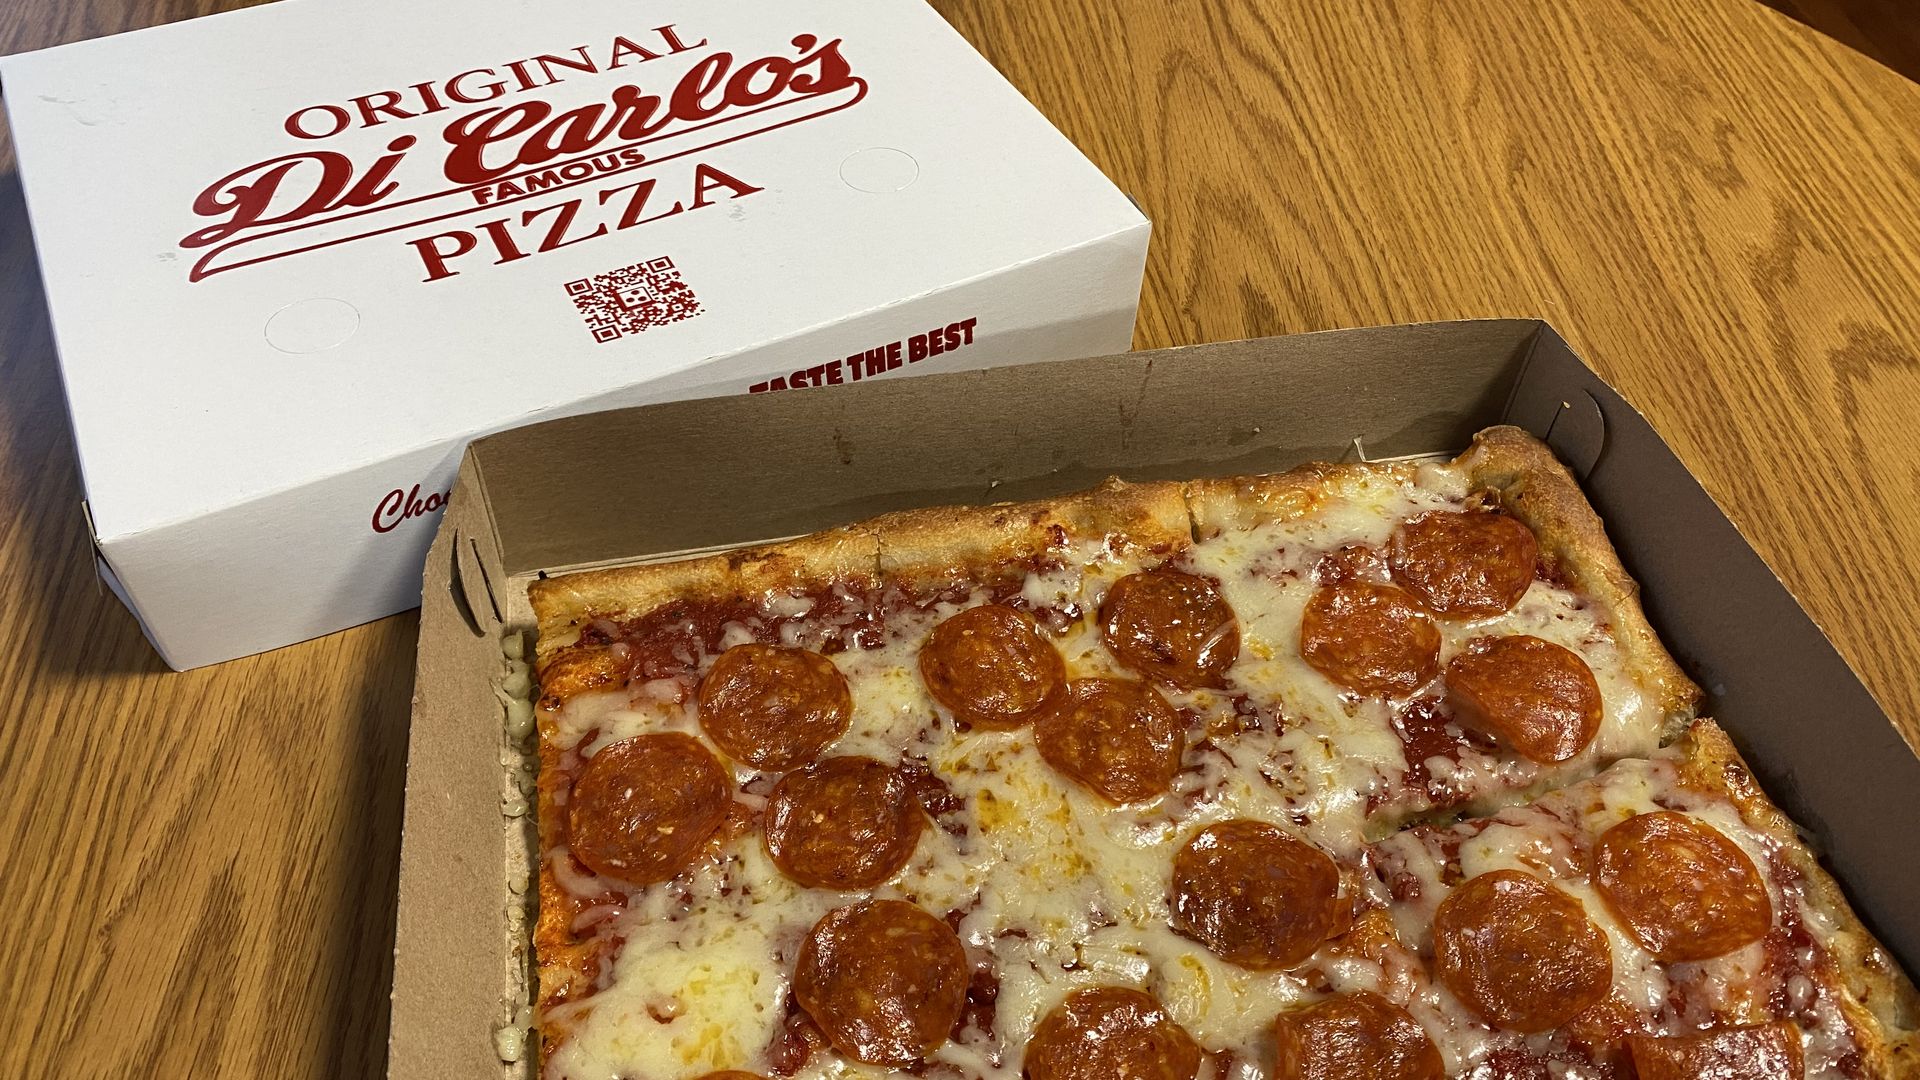 A DiCarlo's Pizza box and a square pizza